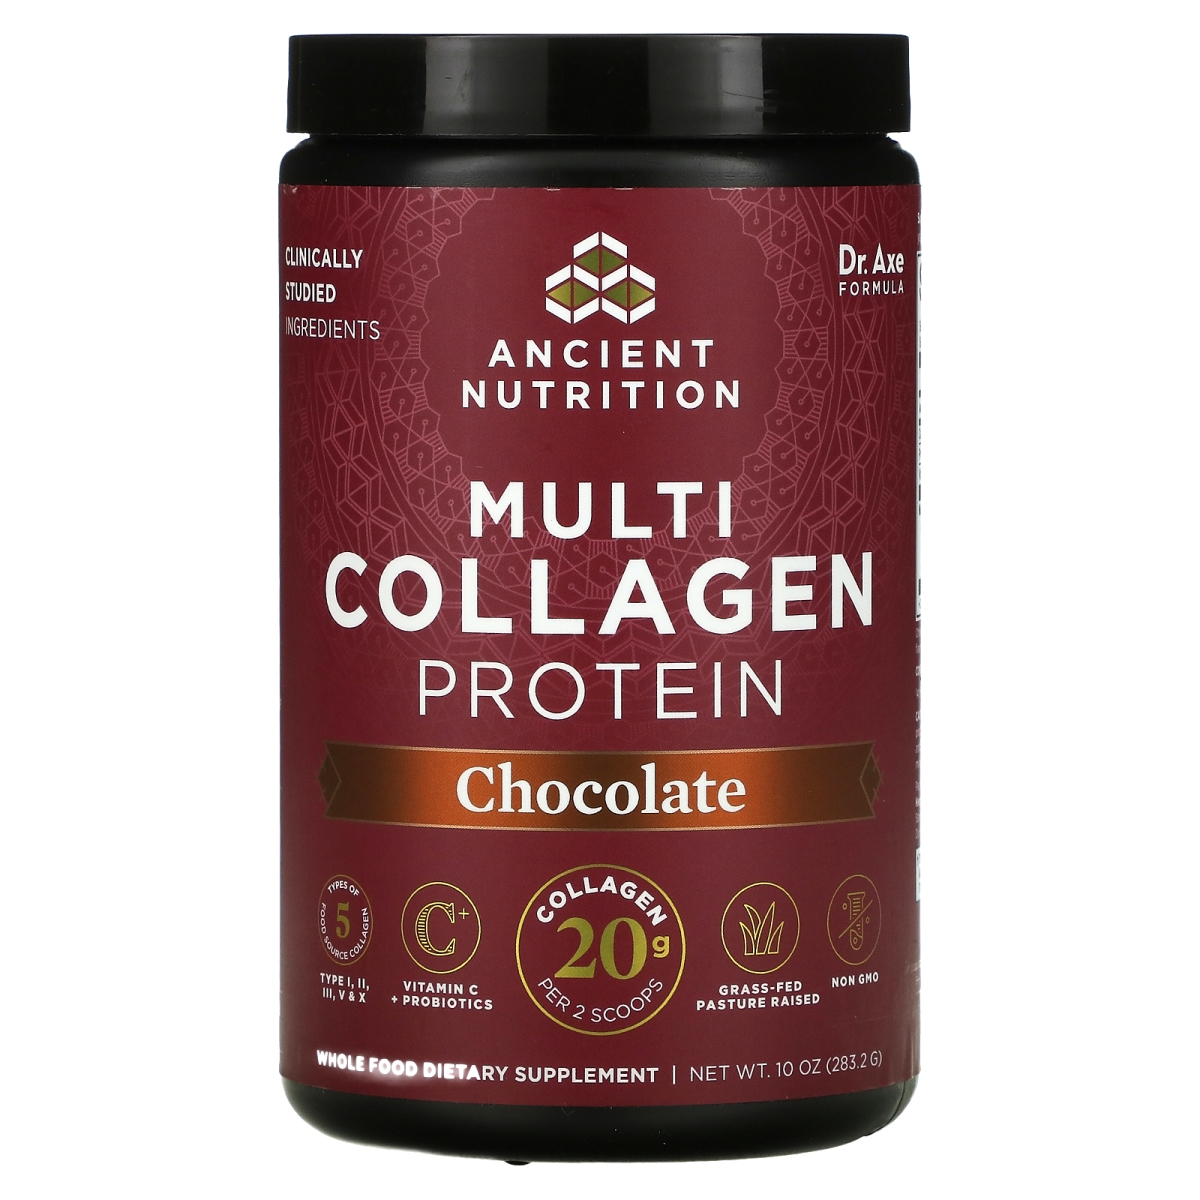 Multi Collagen Protein, Half Size - 314 g (Chocolate) - 816401022202